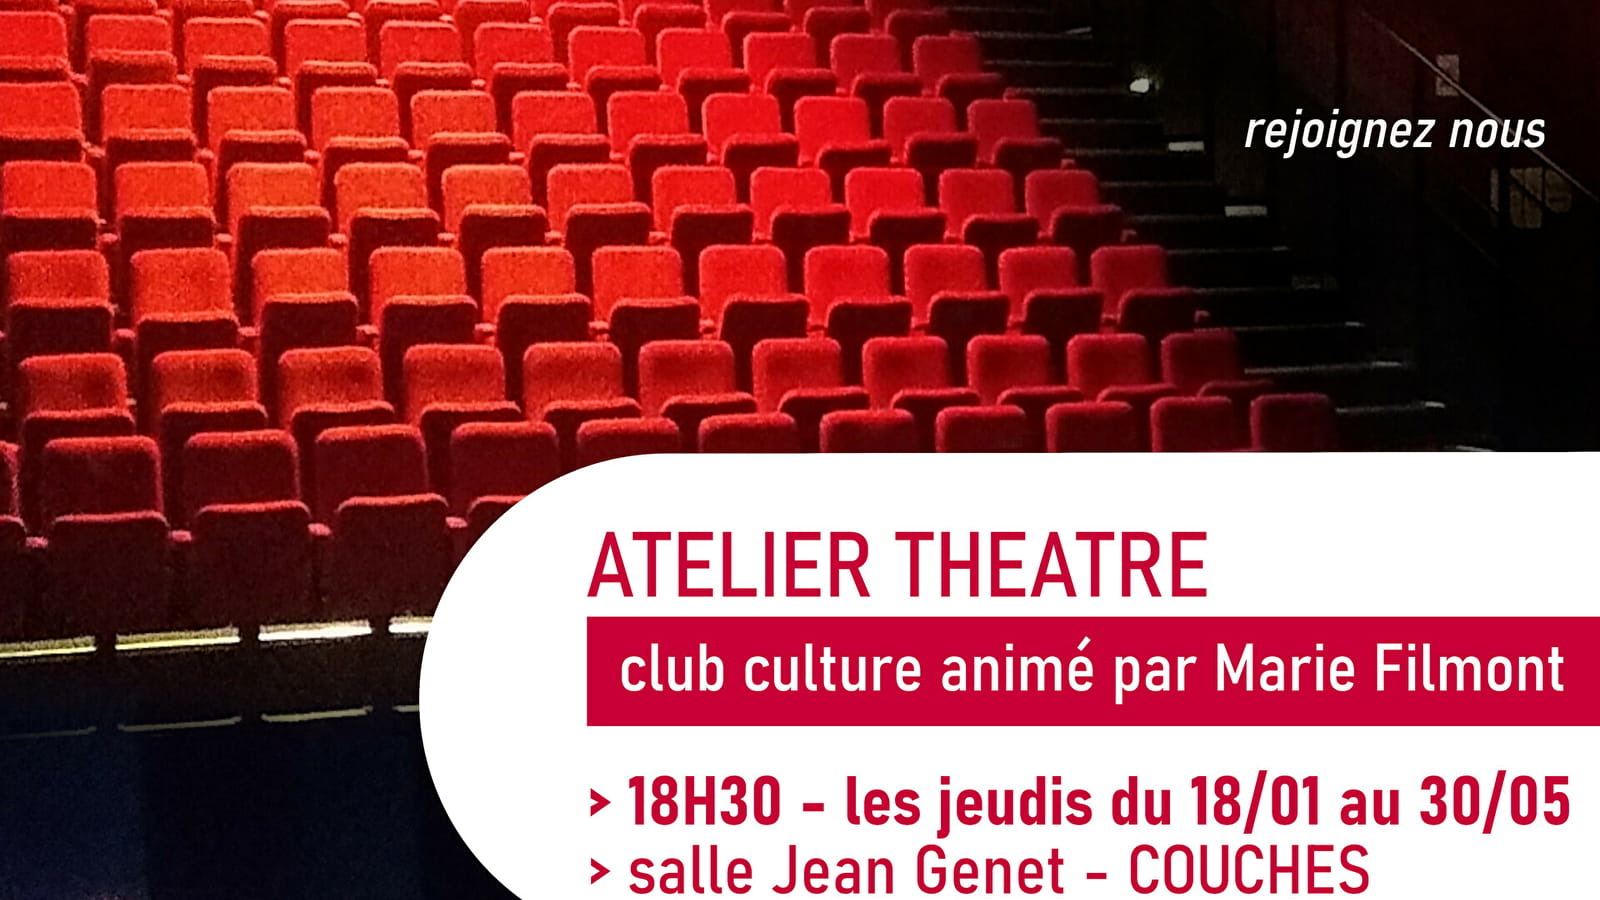 Atelier théâtre - Club culture animé par Marie Filmont